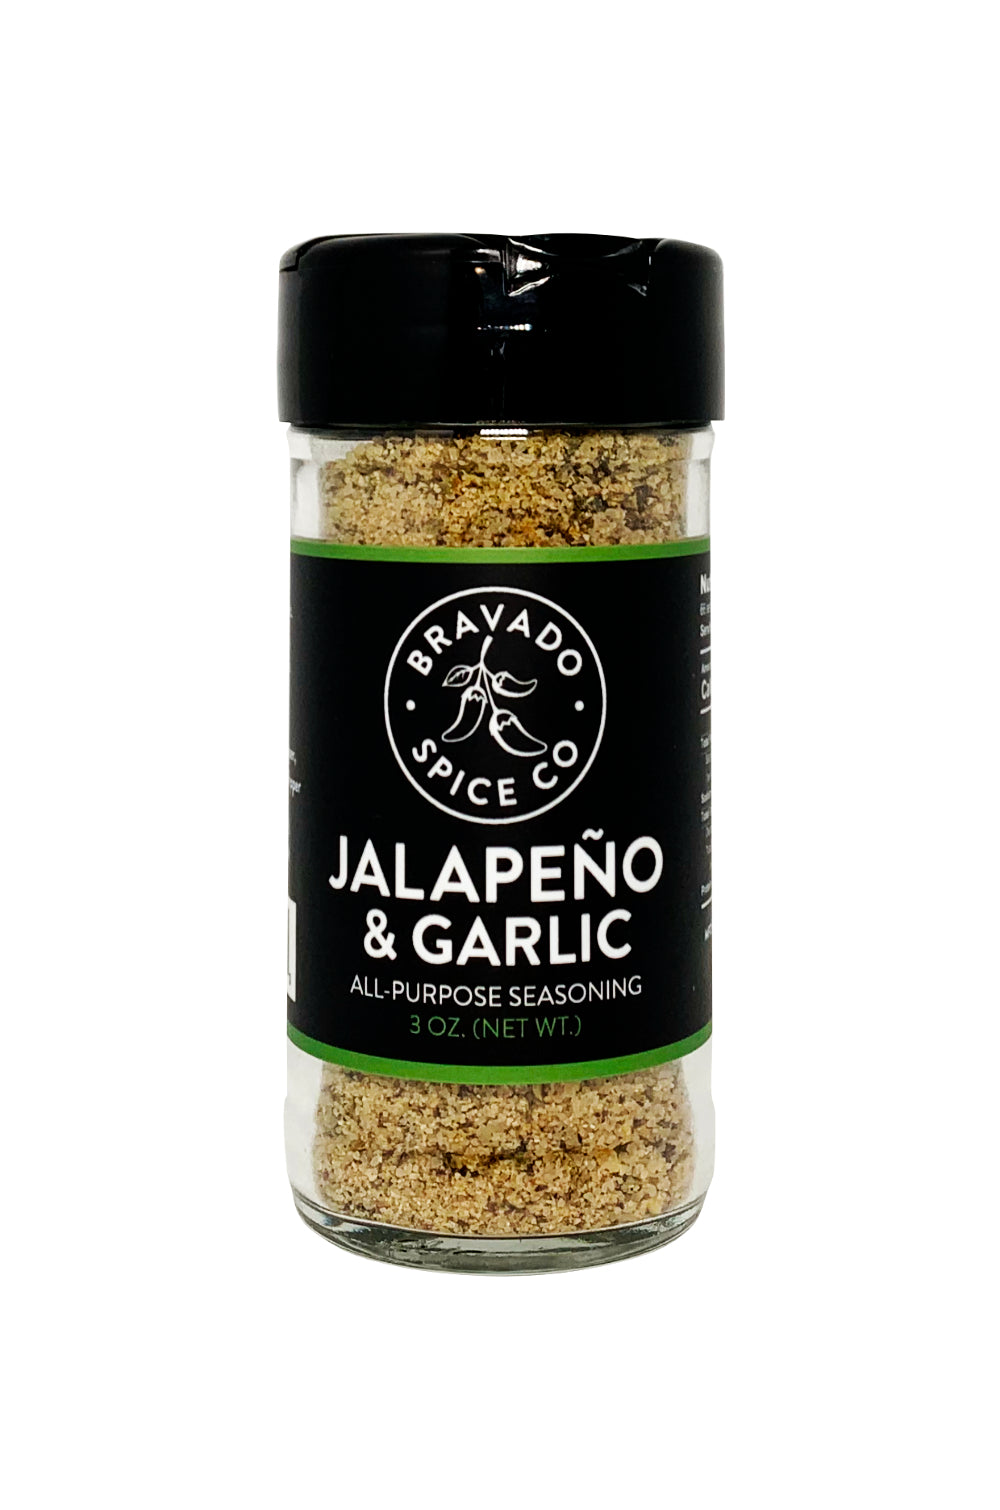 Bravado Spice Co Jalapeño & Garlic Seasoning